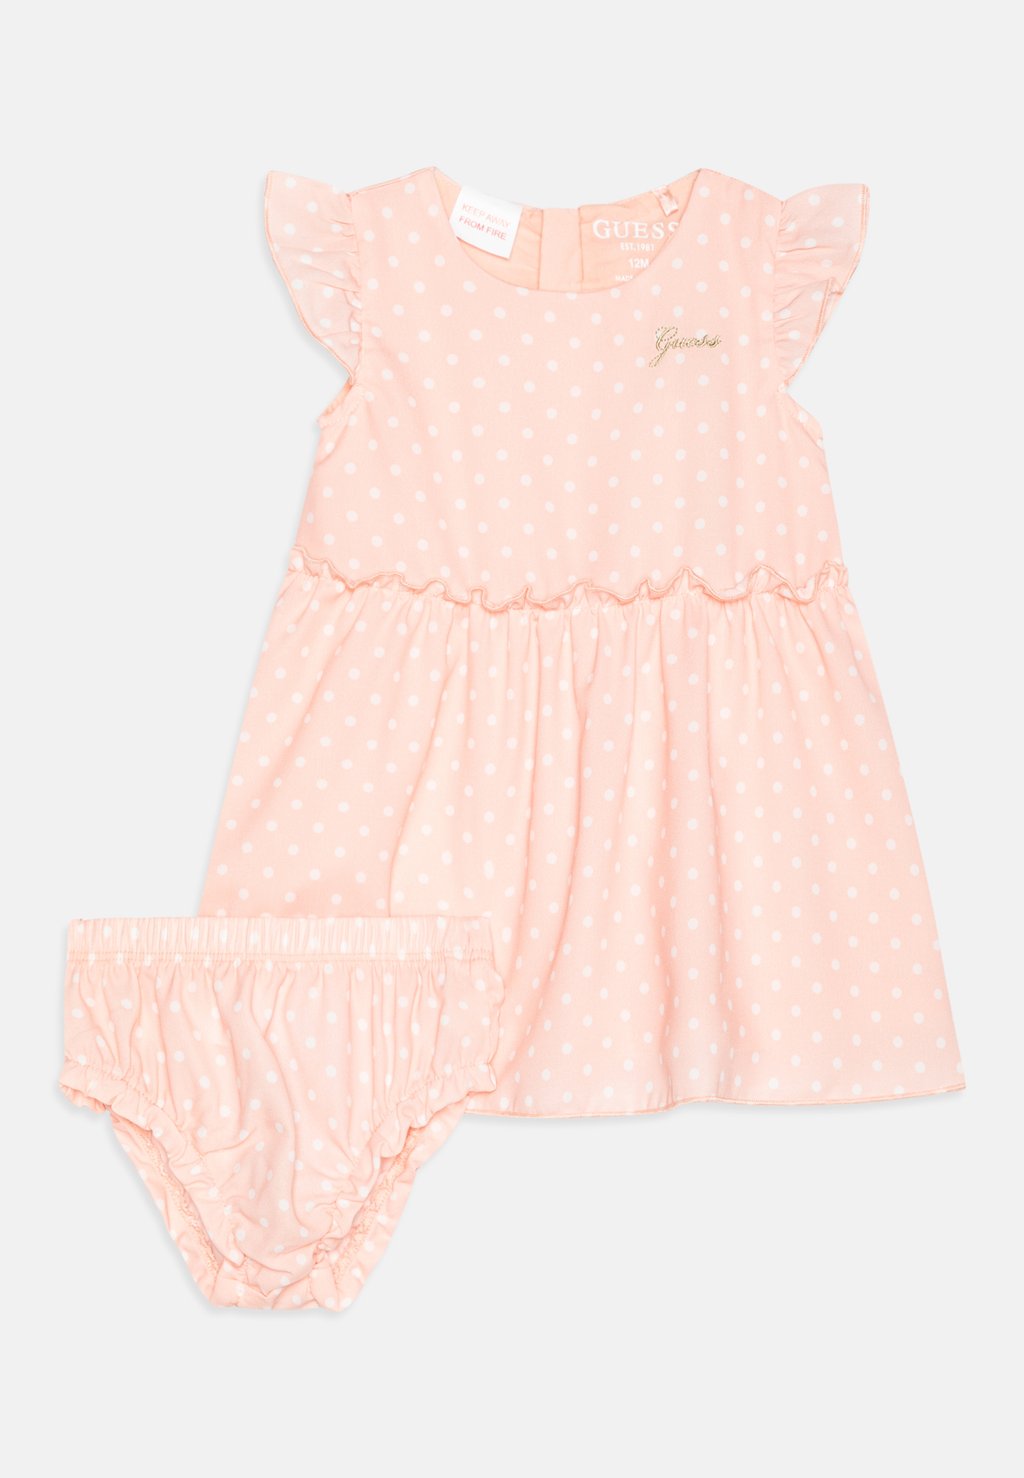 Повседневное платье BABY DRESS Guess, цвет pink/white платье повседневное hello kitty dress addition gcds цвет pink